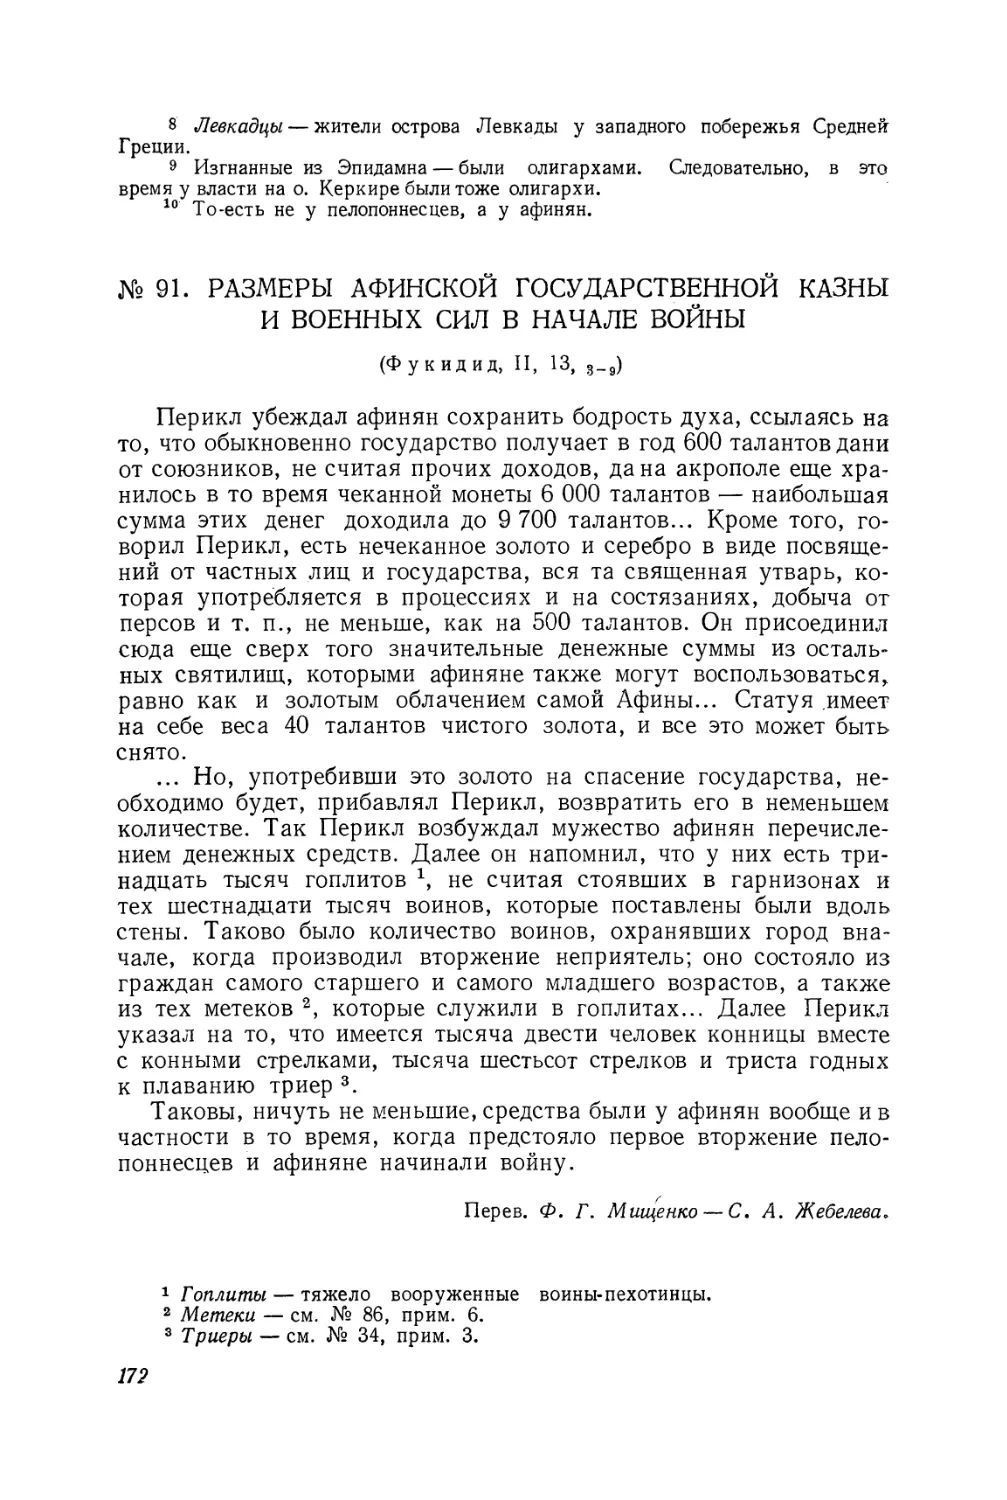 91. Размеры афинской государственной казны и военных сил в начале войны